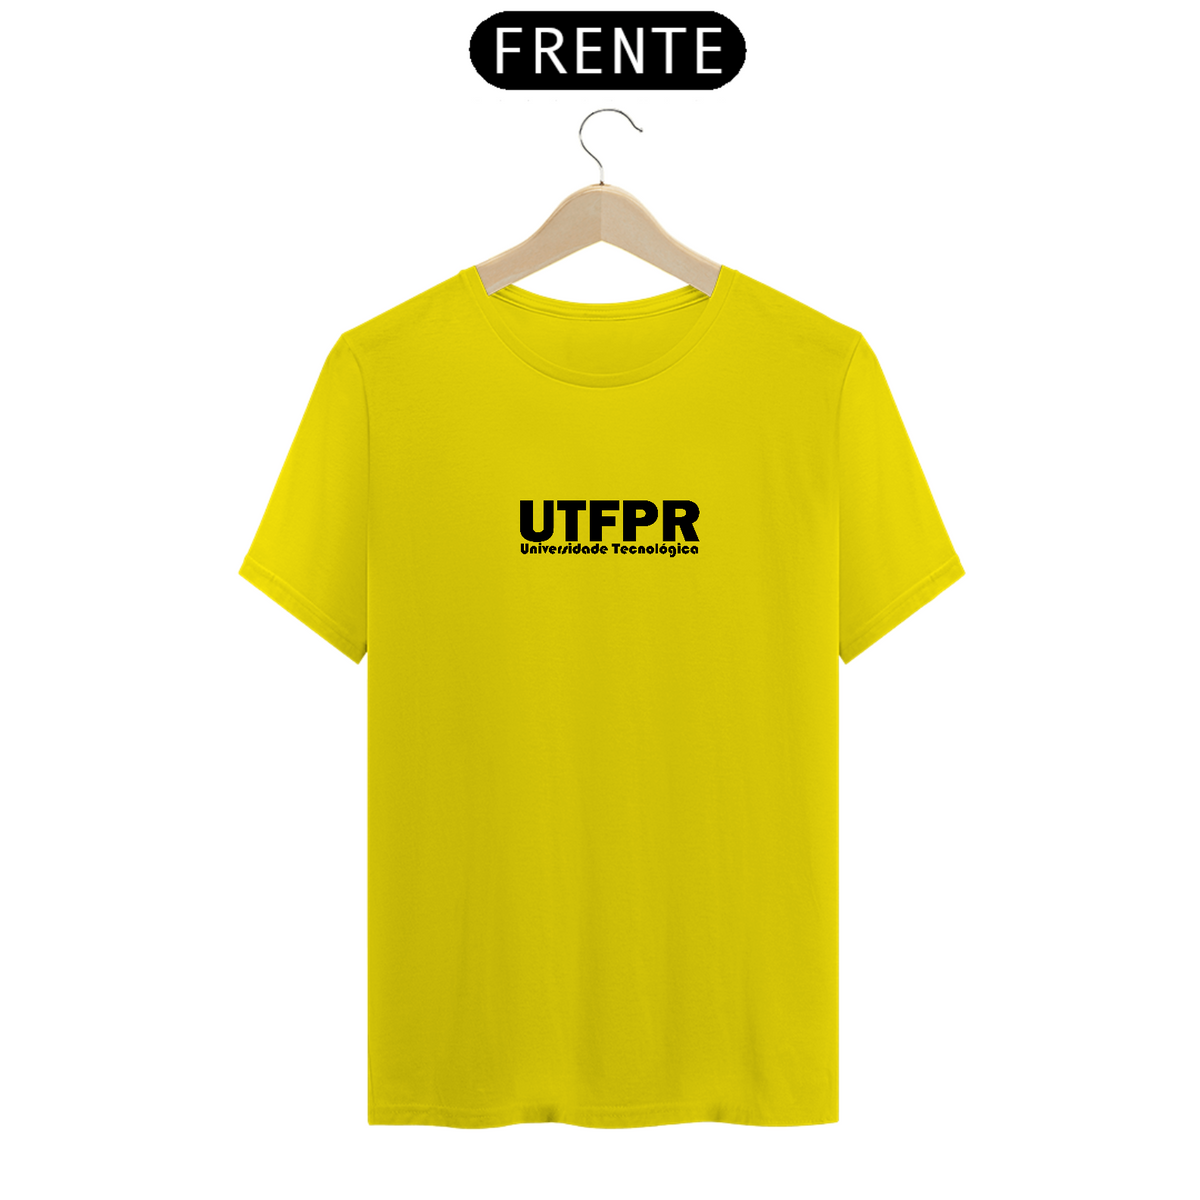 Nome do produto: UTFPR - Universidade tecnológica 